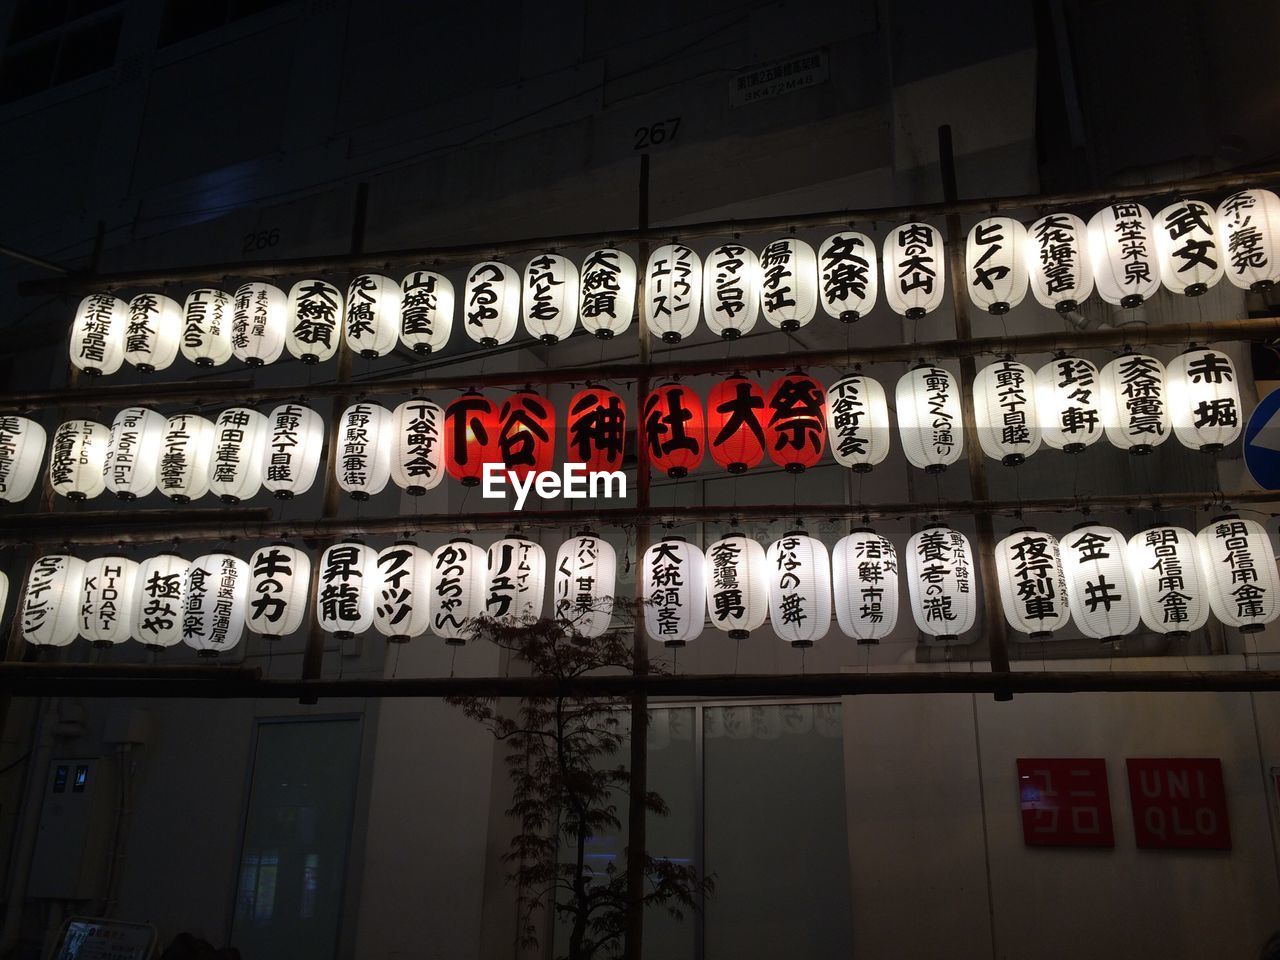 Illuminated japanese lantern hanging by building